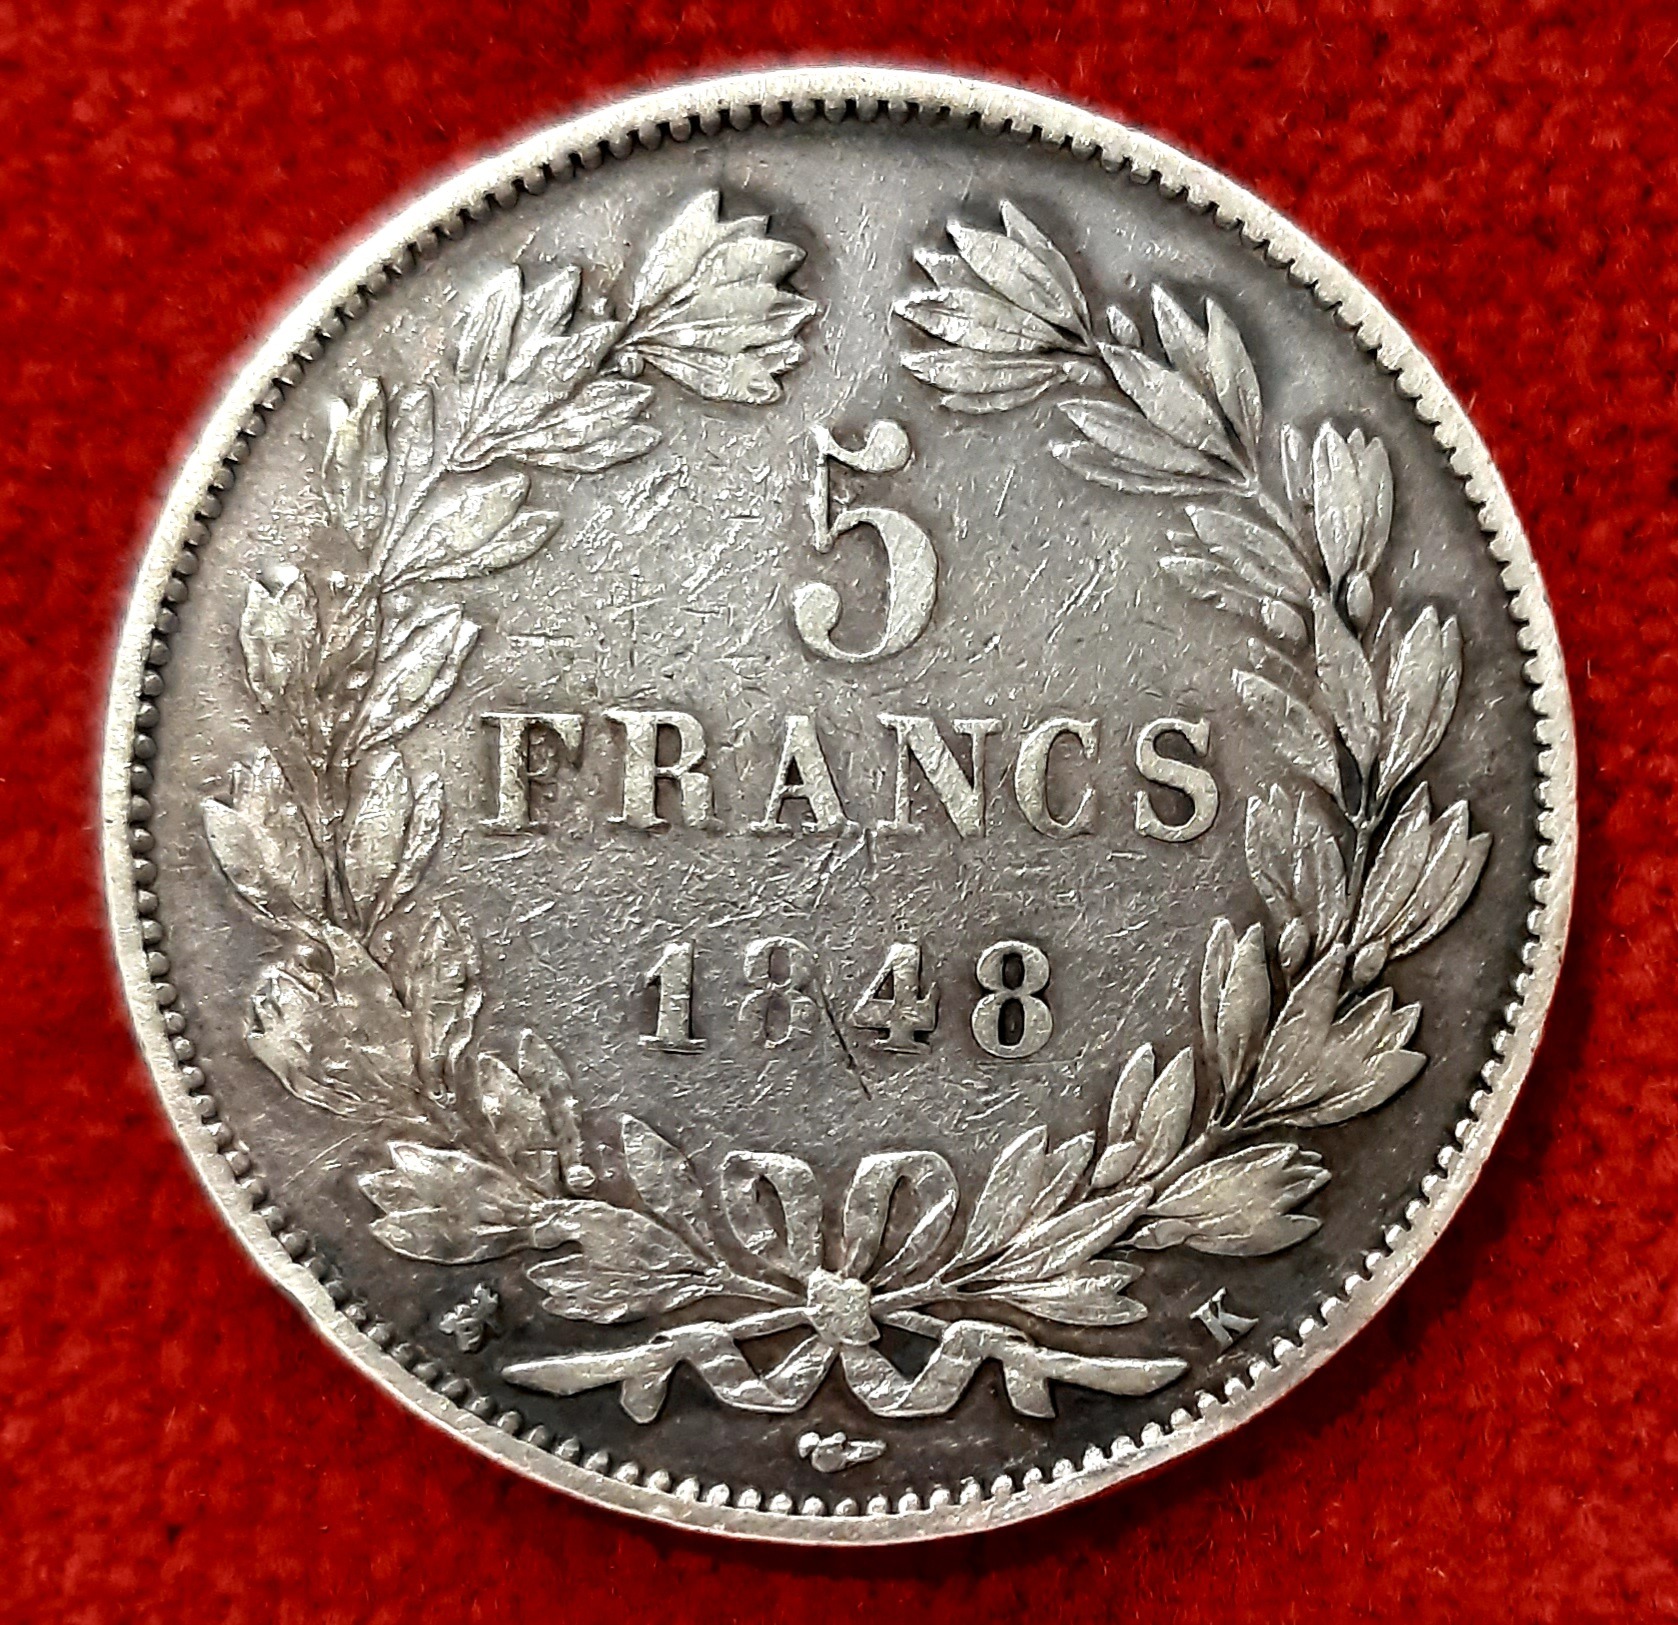 Louis Philippe 5 Francs Argent 1848 K. Bordeaux.